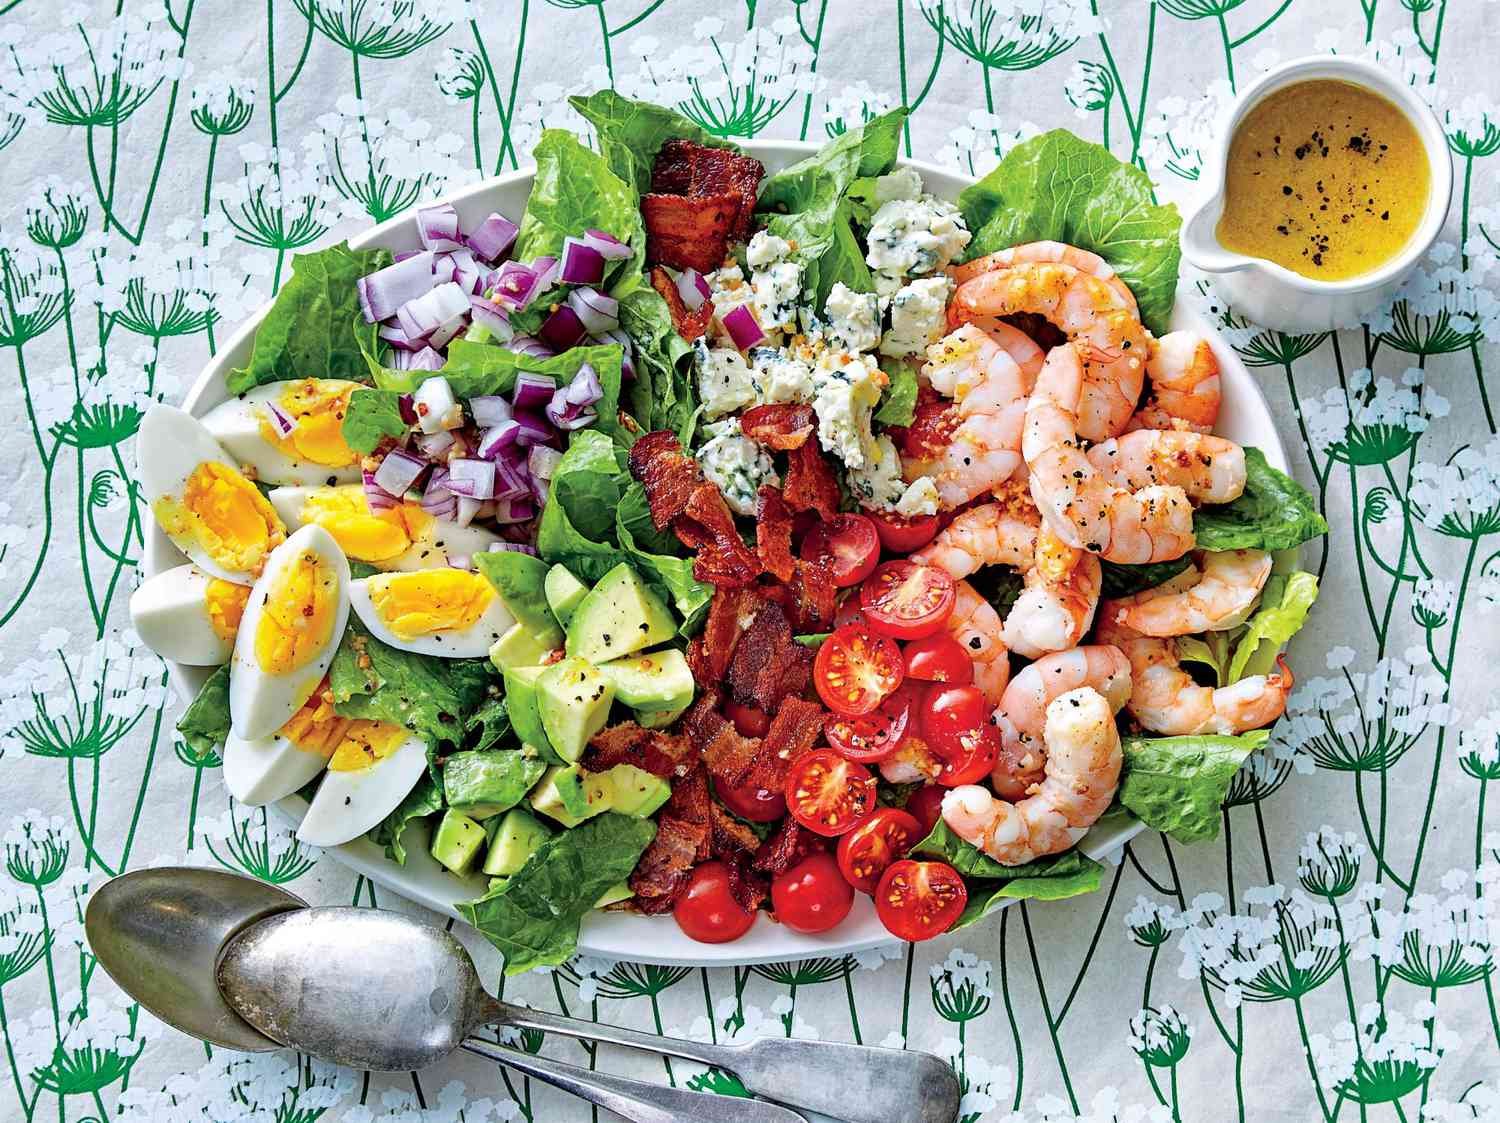 Shrimp Cobb Salad with Bacon Dressing Recipe